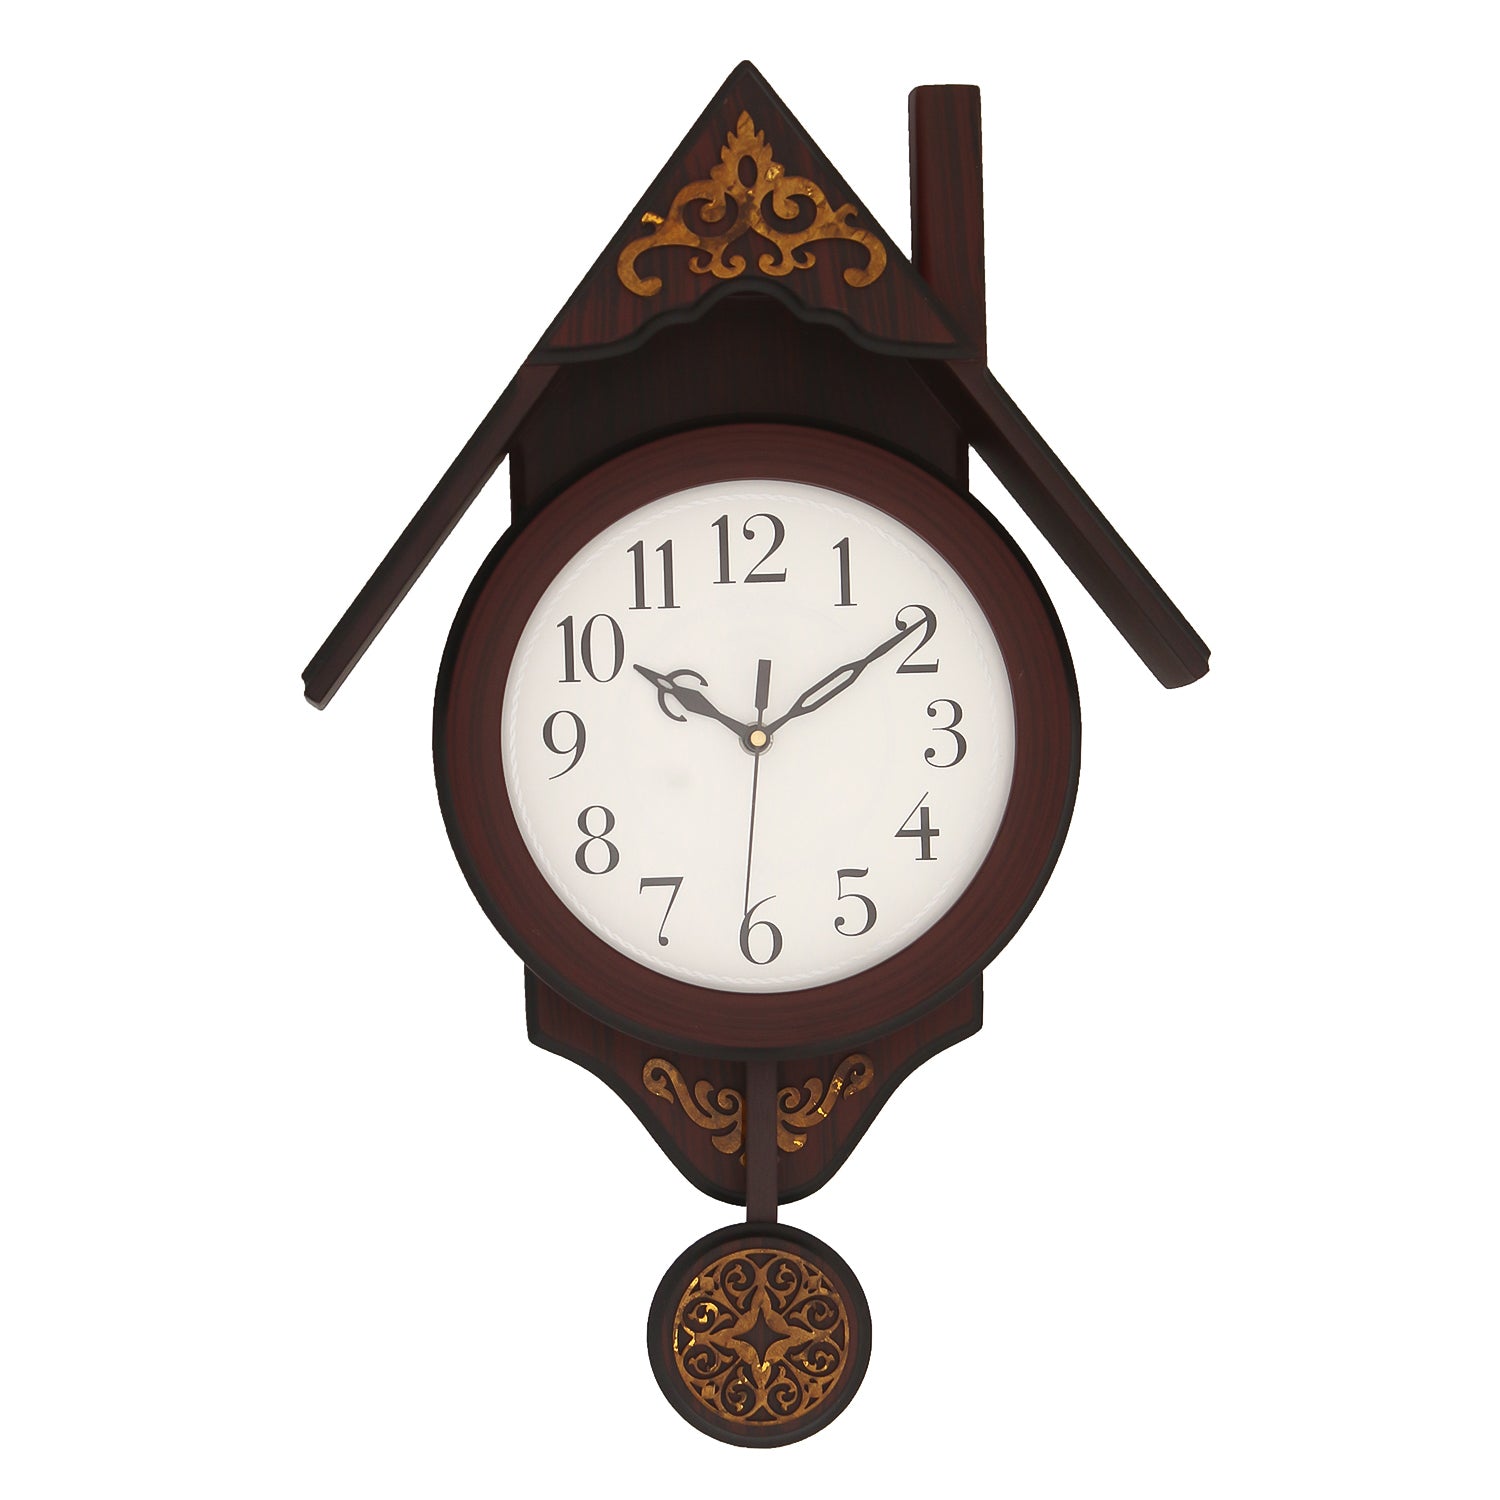 100,000 Pendulum clock Vector Images | Depositphotos